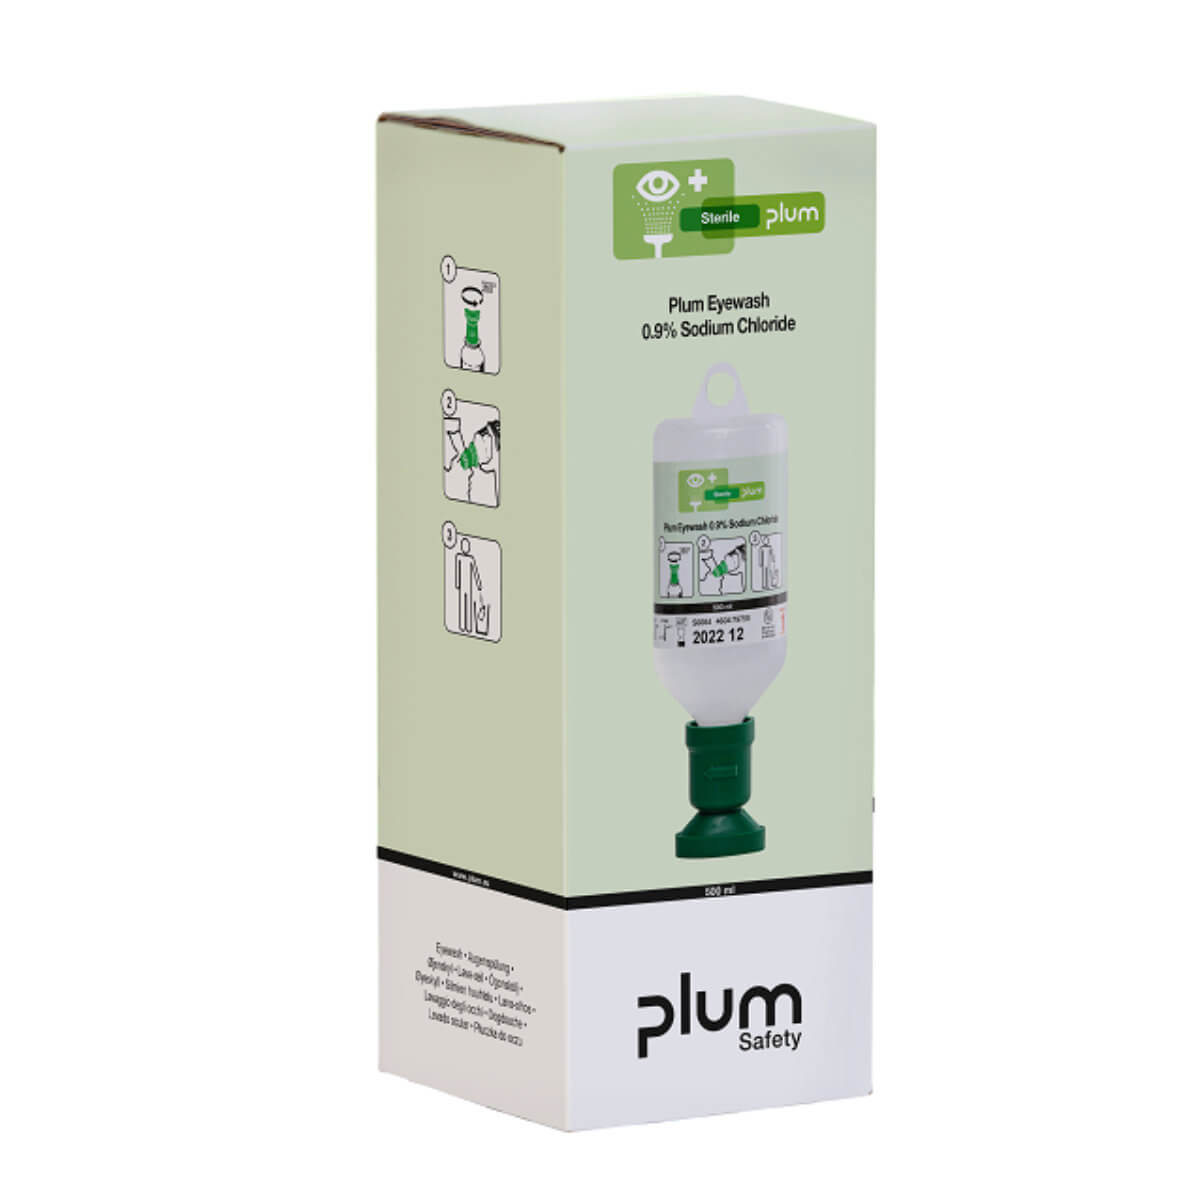 Augenspülung Plum DUO pH-neutral 500 ml